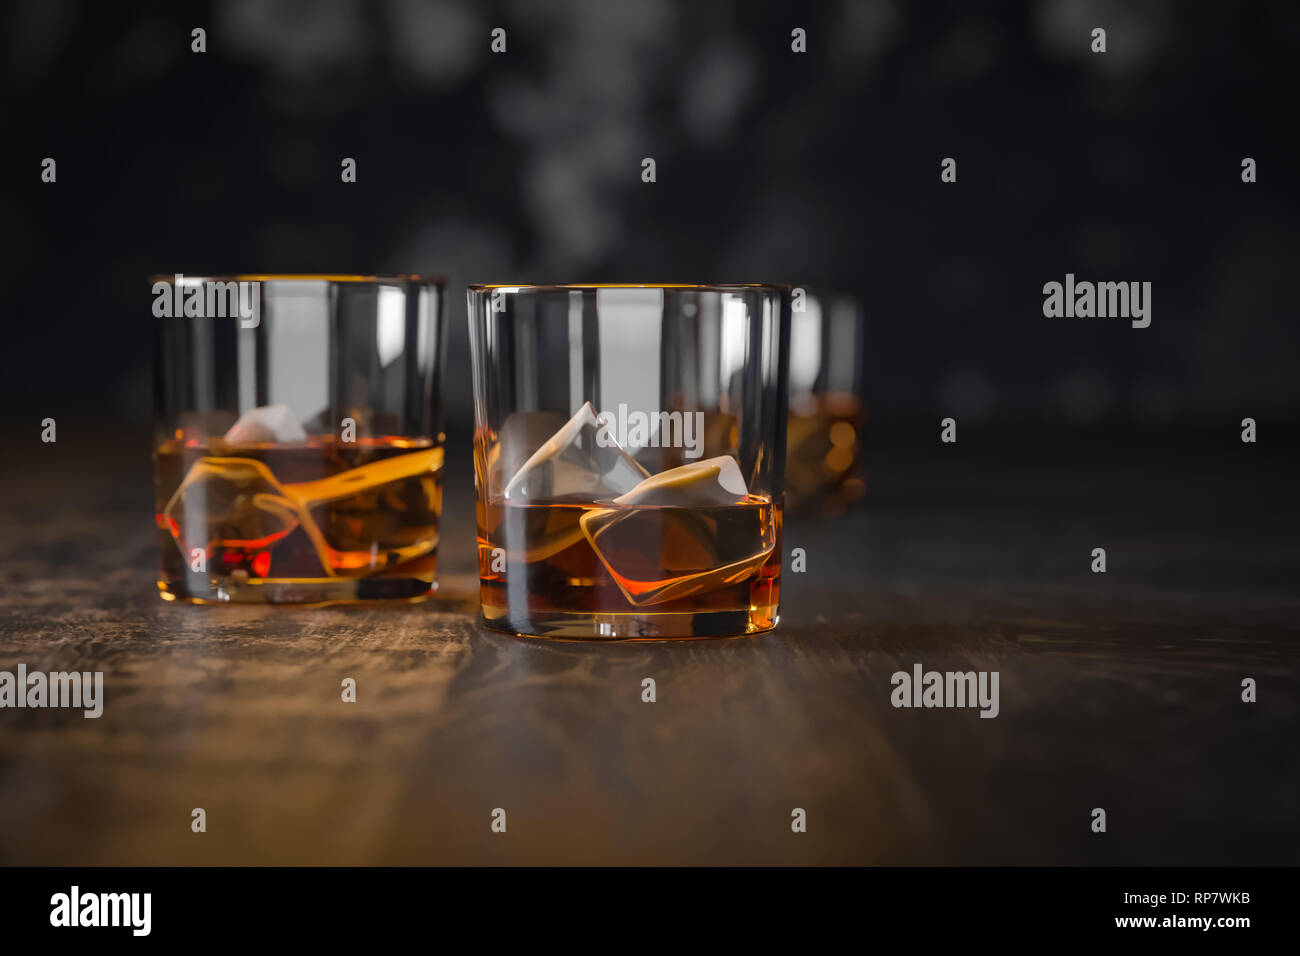 Tres vasos de whisky con hielo, stand en una oscura mesa de madera antigua y un fondo negro Foto de stock